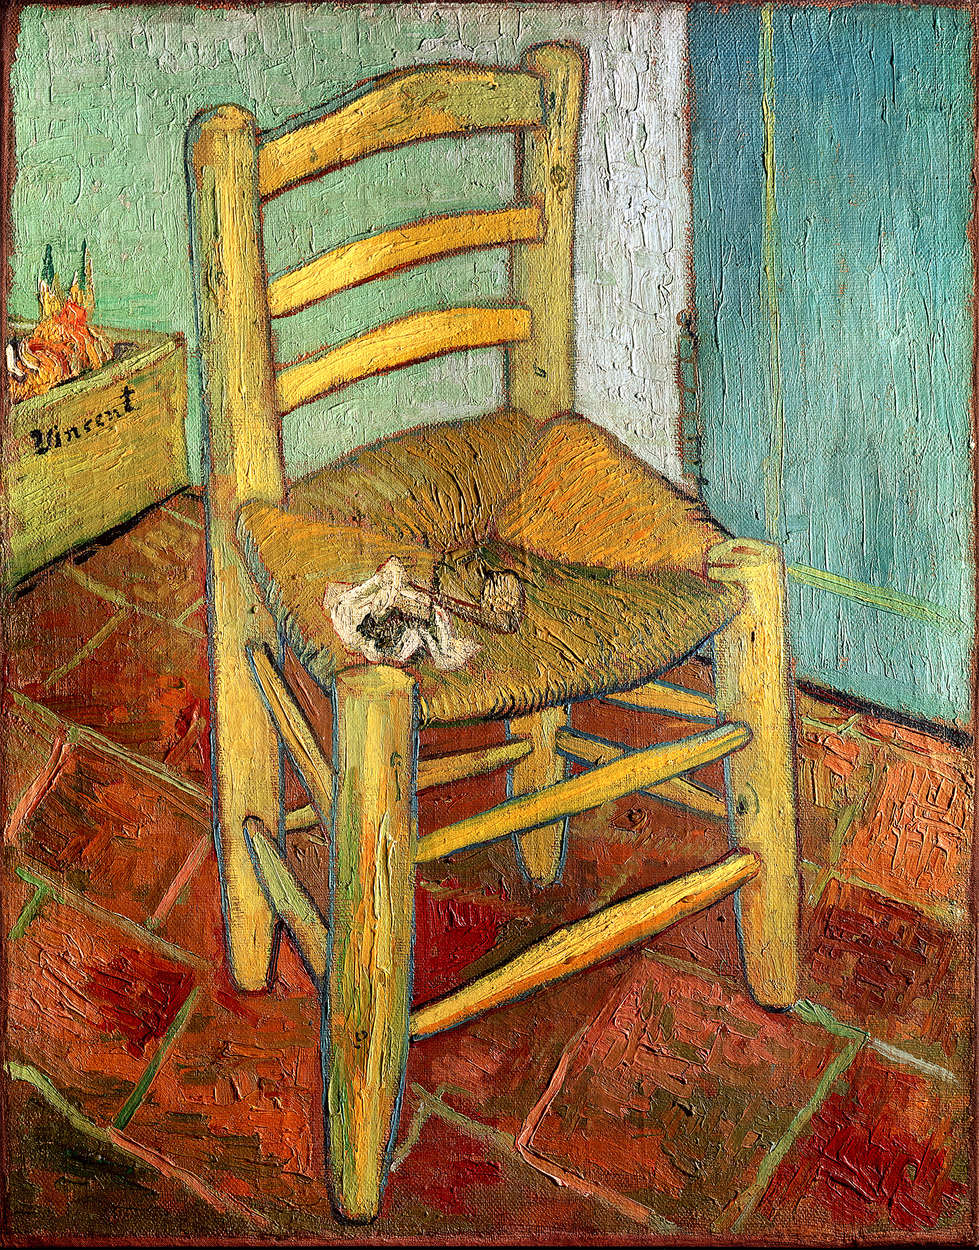             Vincent van Gogh "De stoel van Vincent" Muurschildering
        